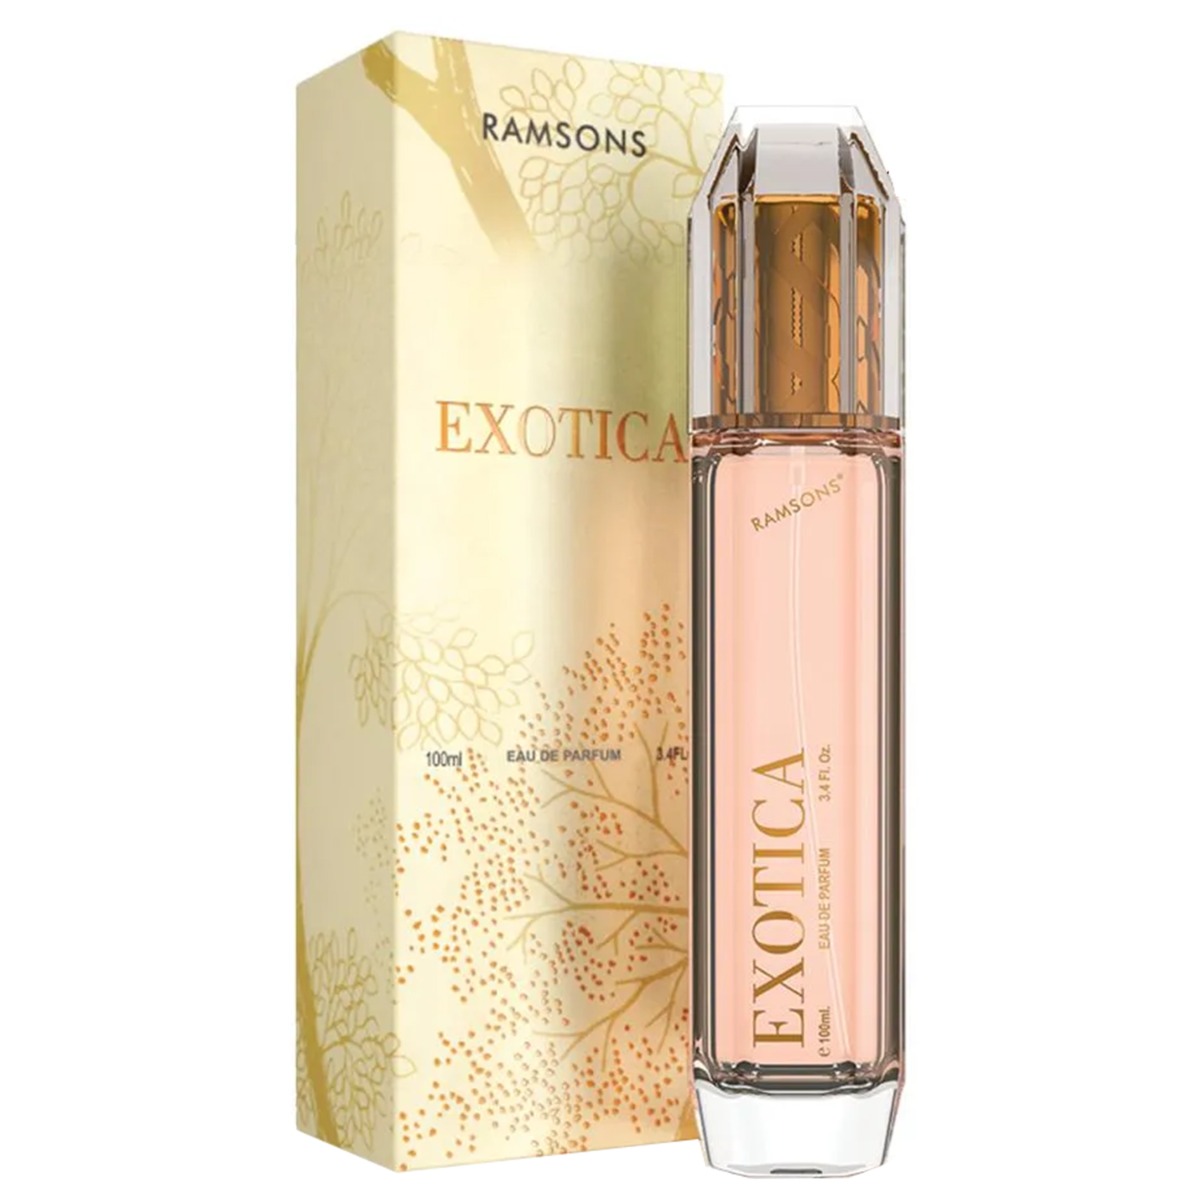 Ramsons Exotica Eau De Parfum, 100ml